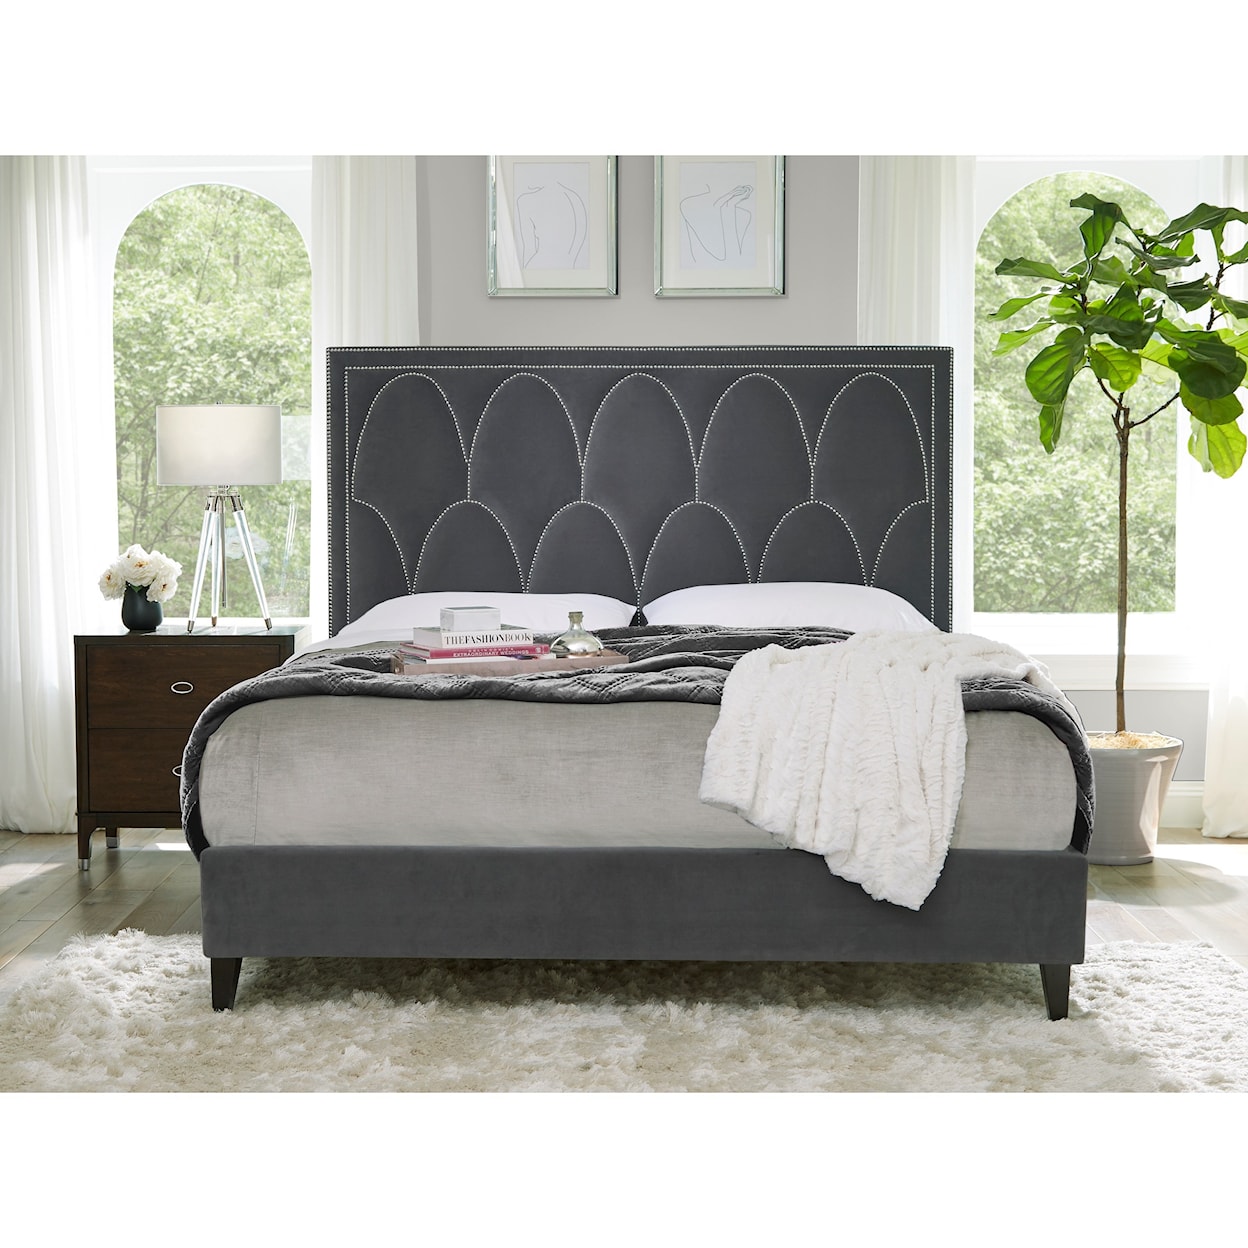 Standard Furniture Delano King Upholstered Bed